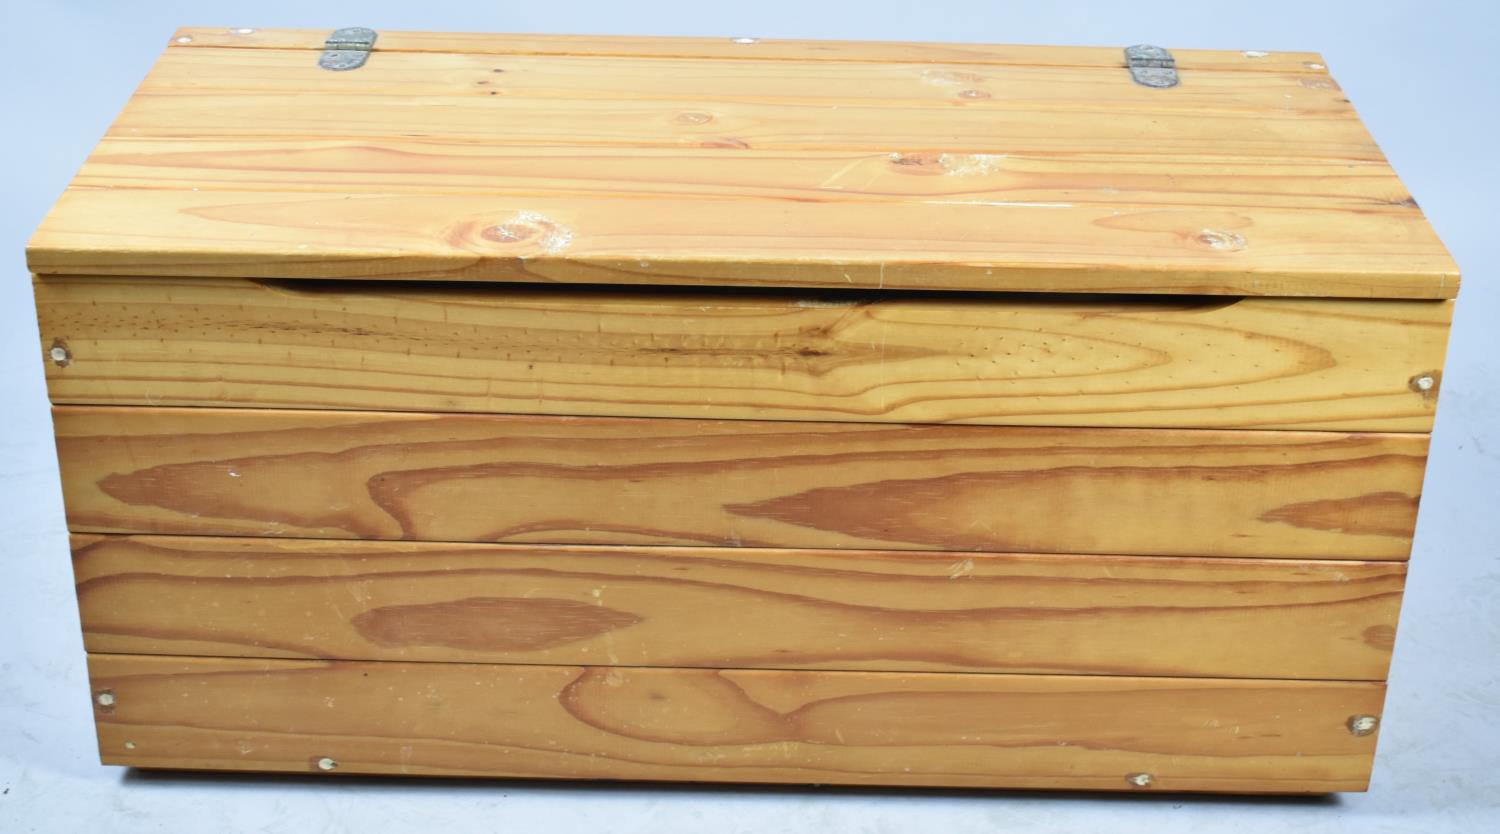 A Modern Pine Storage or Toy Box, 80cm Long